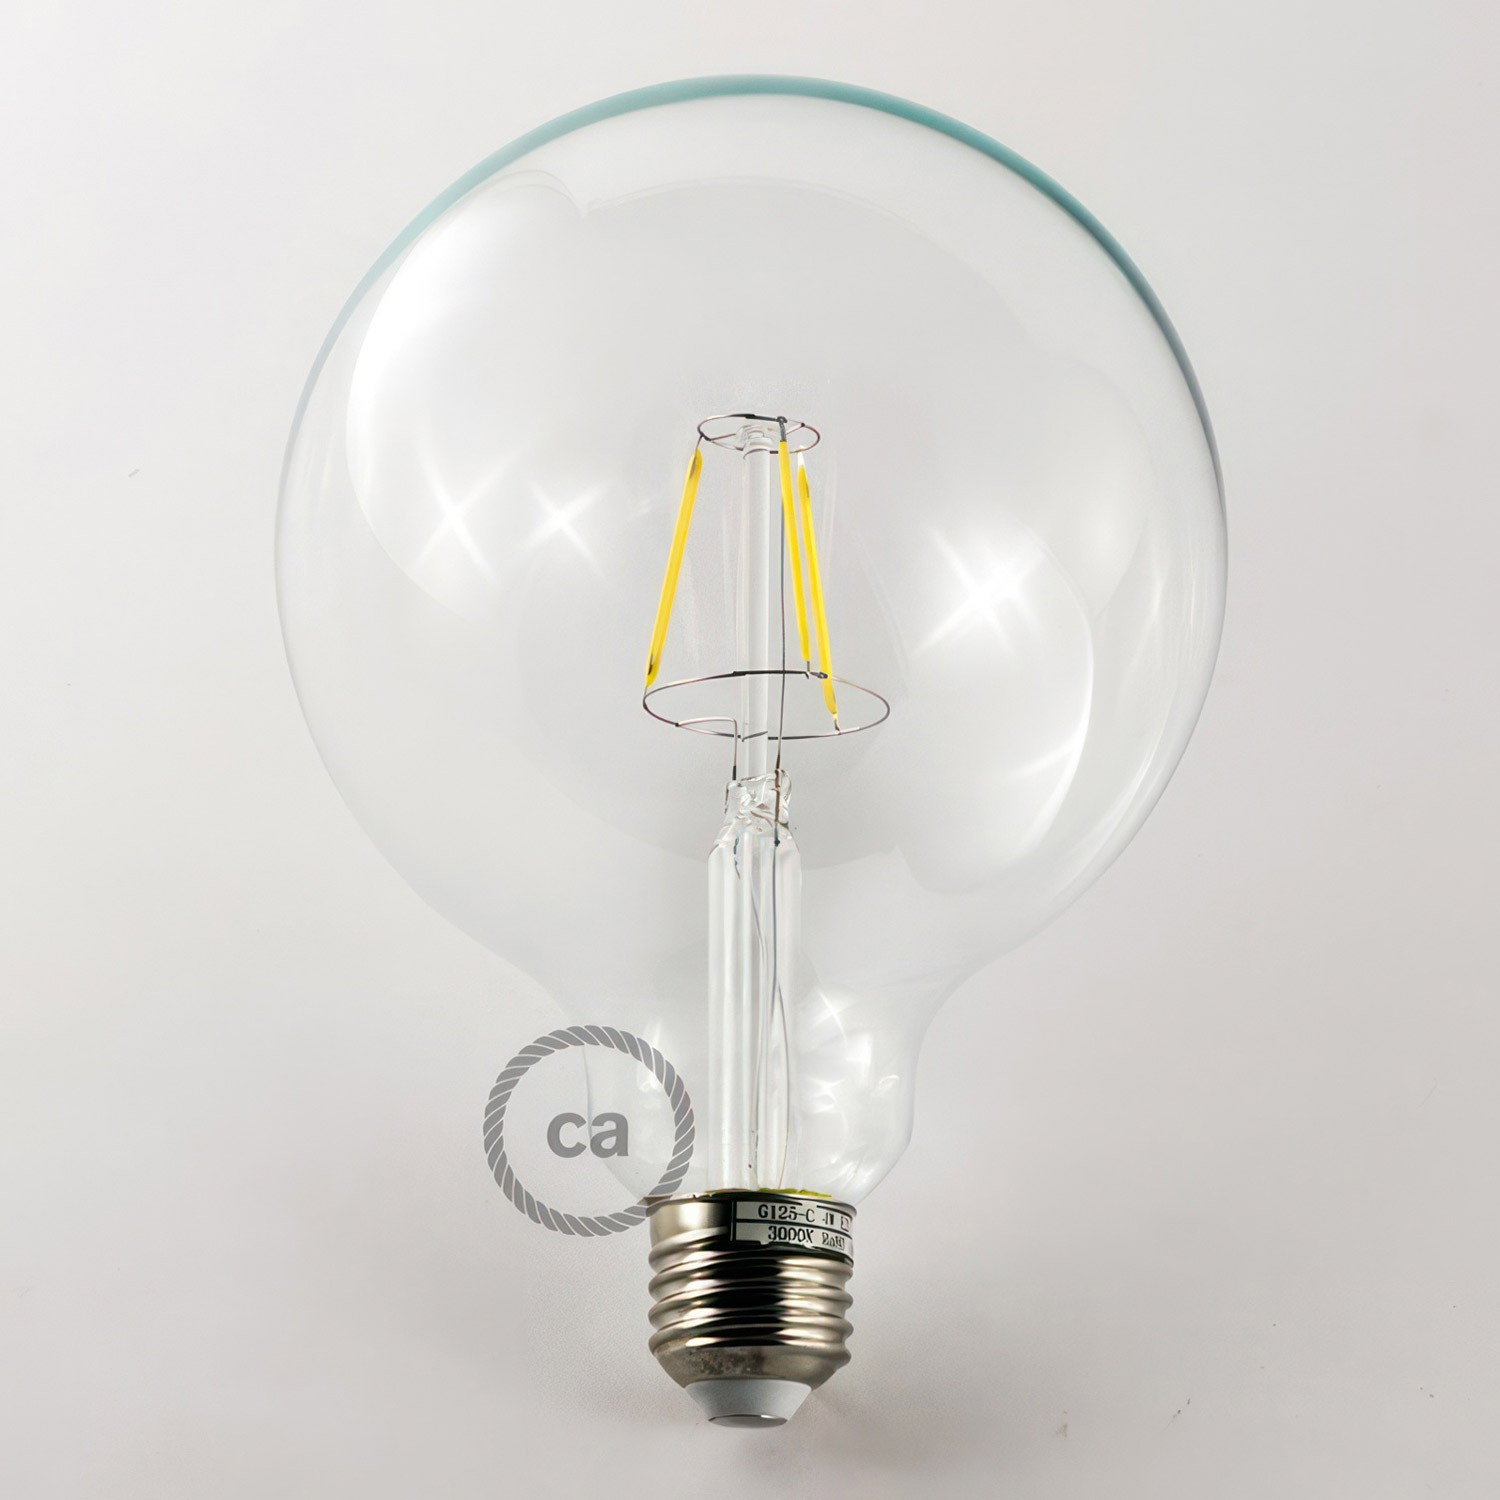 7 lichts-hanglamp voorzien van XXL rechthoekige Rose-One 675 mm compleet met strijkijzersnoer en metalen afwerking